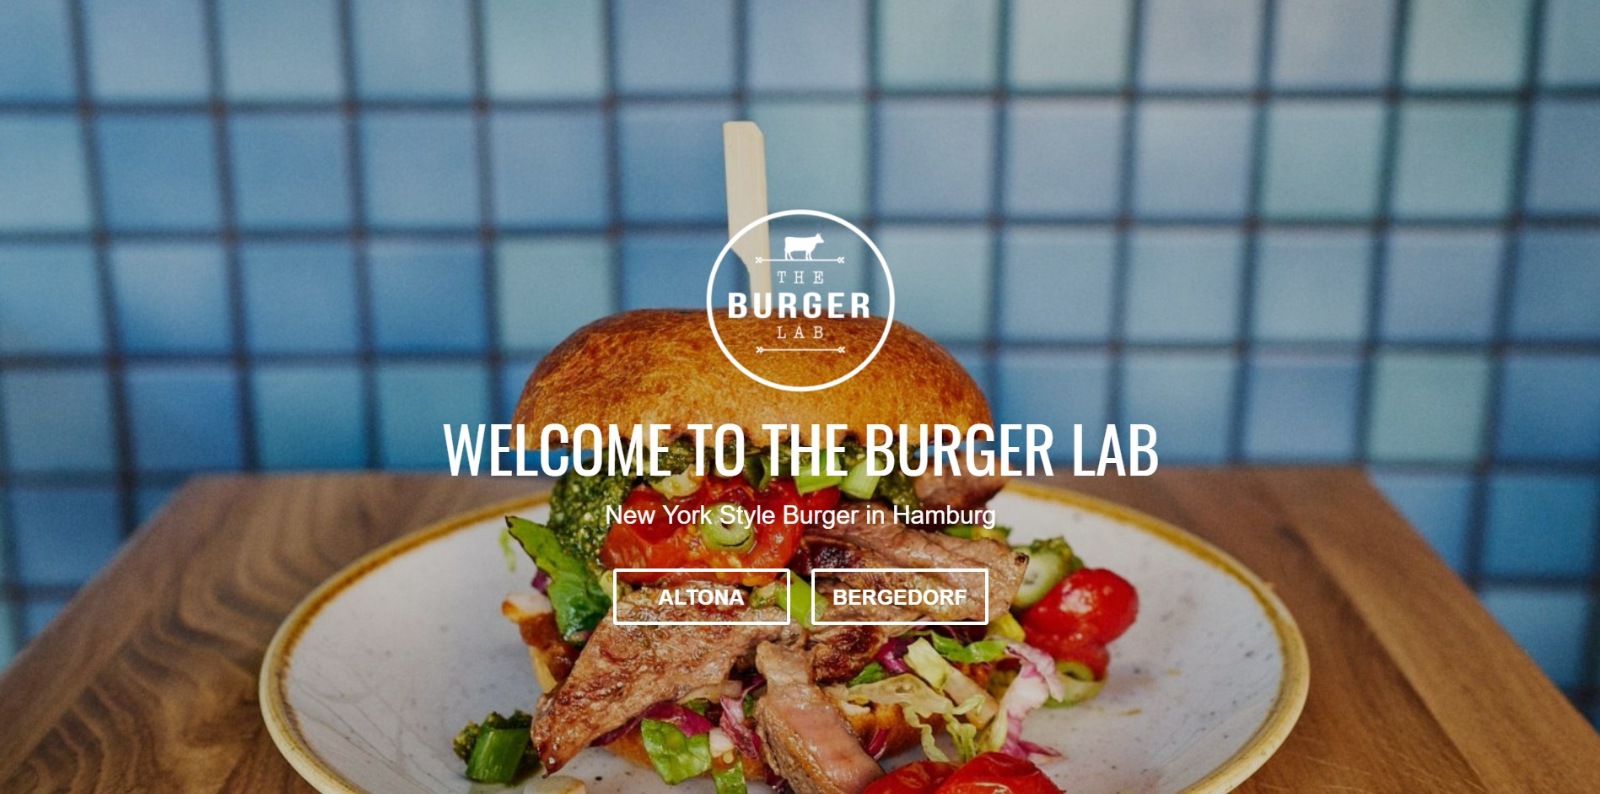 The Burger Lab